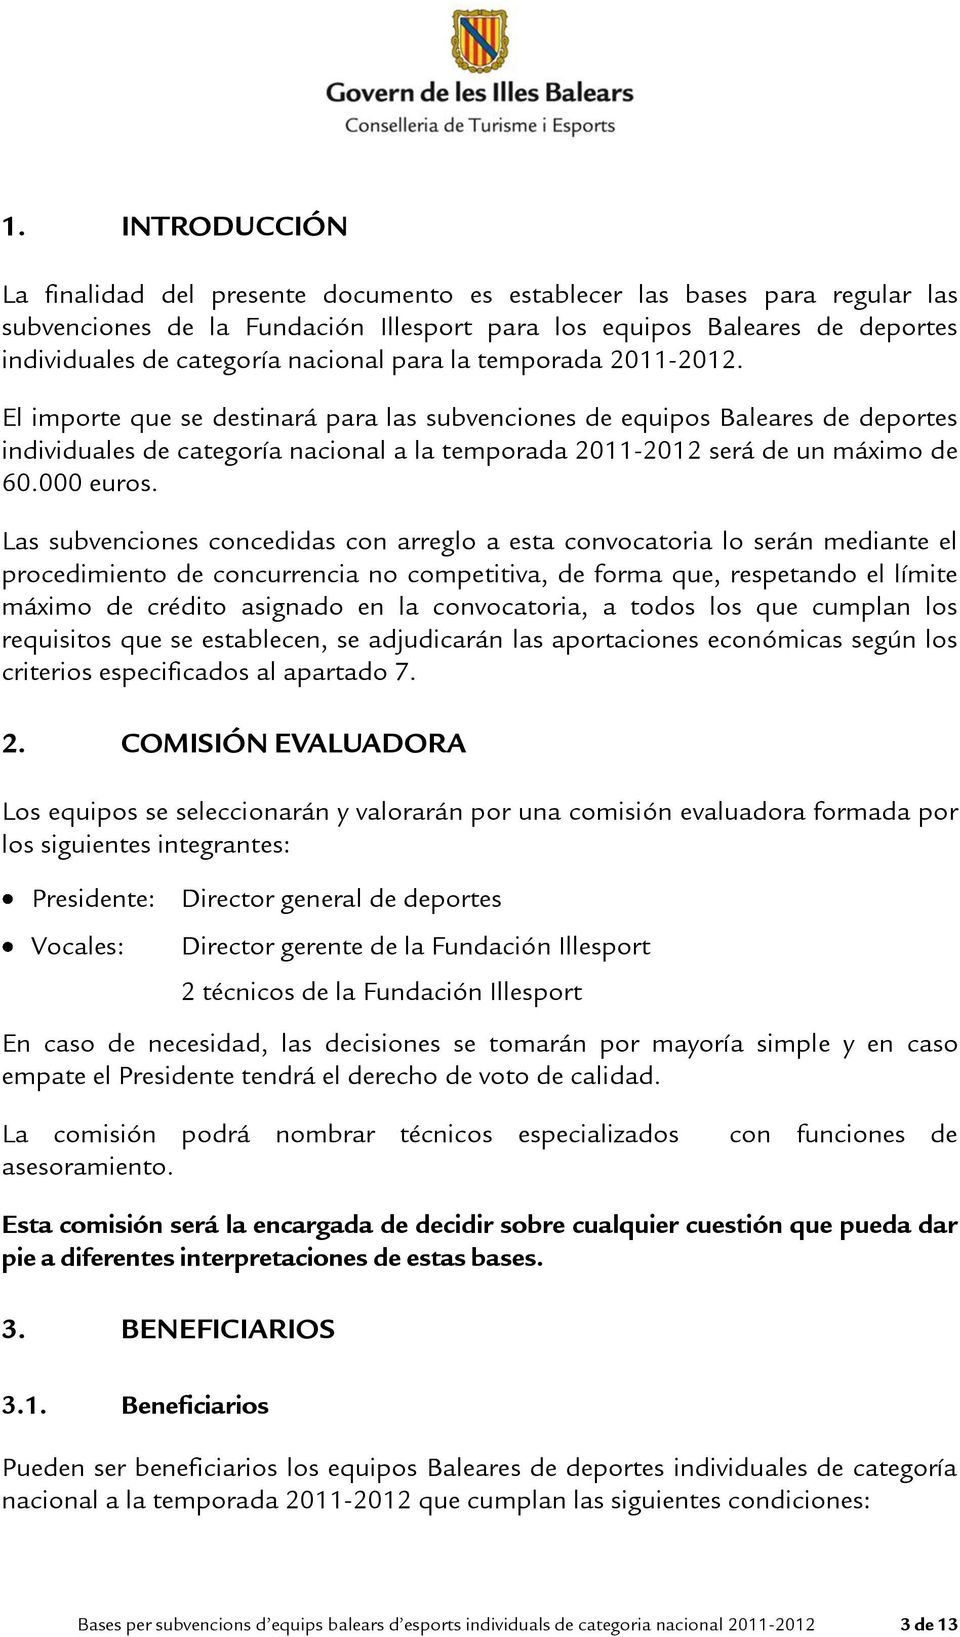 El importe que se destinará para las subvenciones de equipos Baleares de deportes individuales de categoría nacional a la temporada 2011-2012 será de un máximo de 60.000 euros.